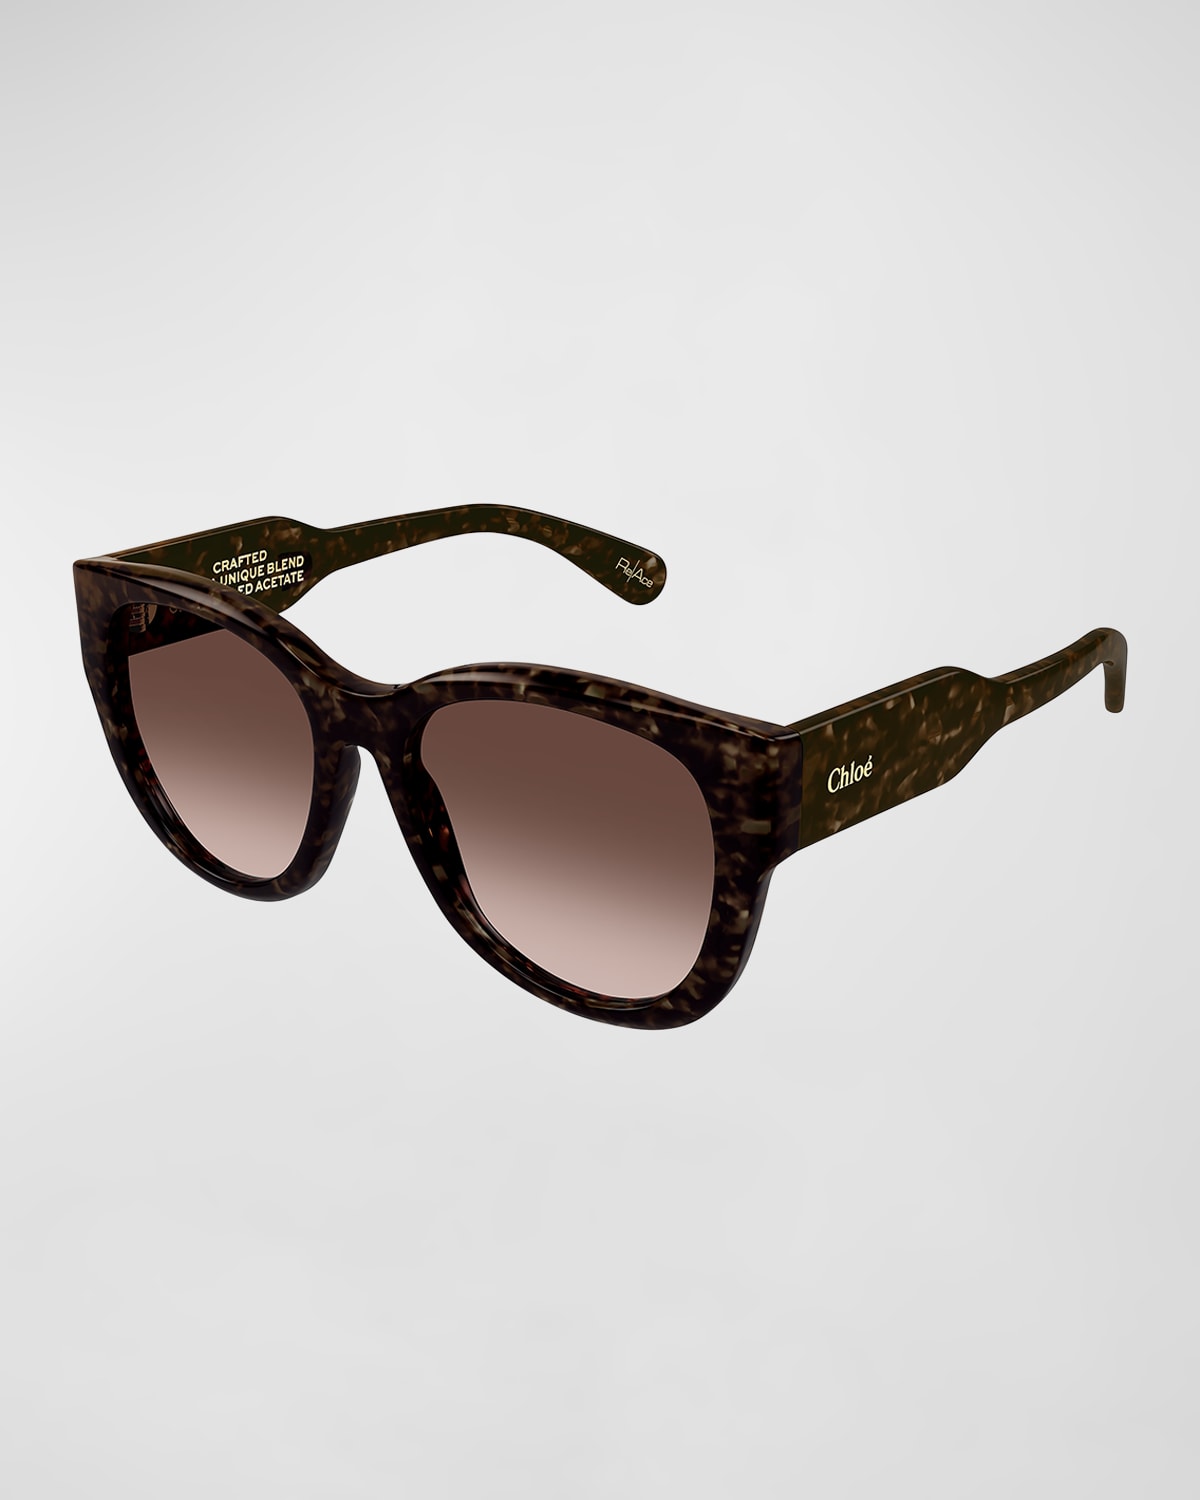 Chloe Acetate Round Sunglasses | Neiman Marcus